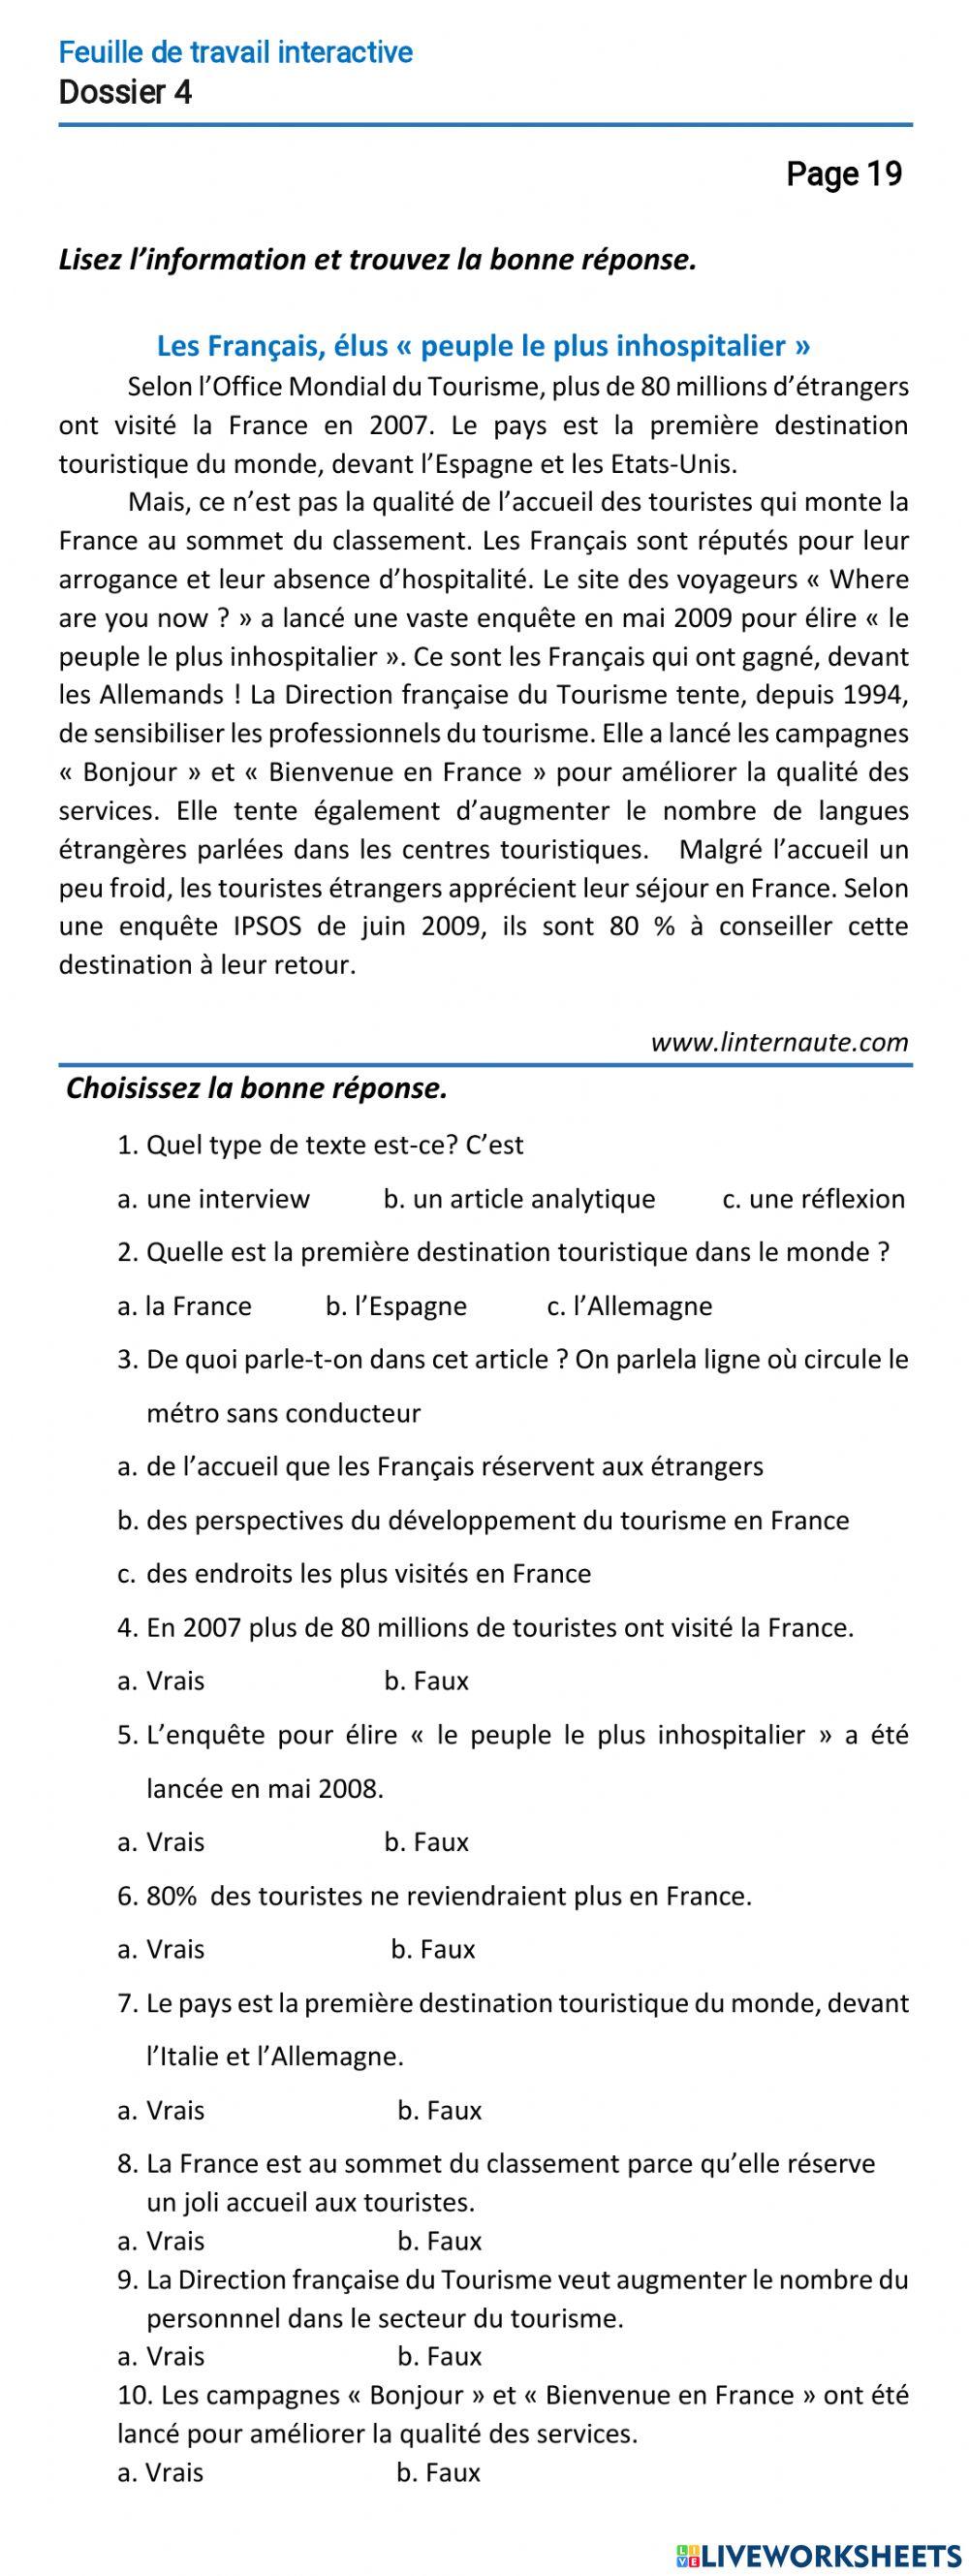 Le français-11 (повыш. ур.)-Dossier 4-Page 19